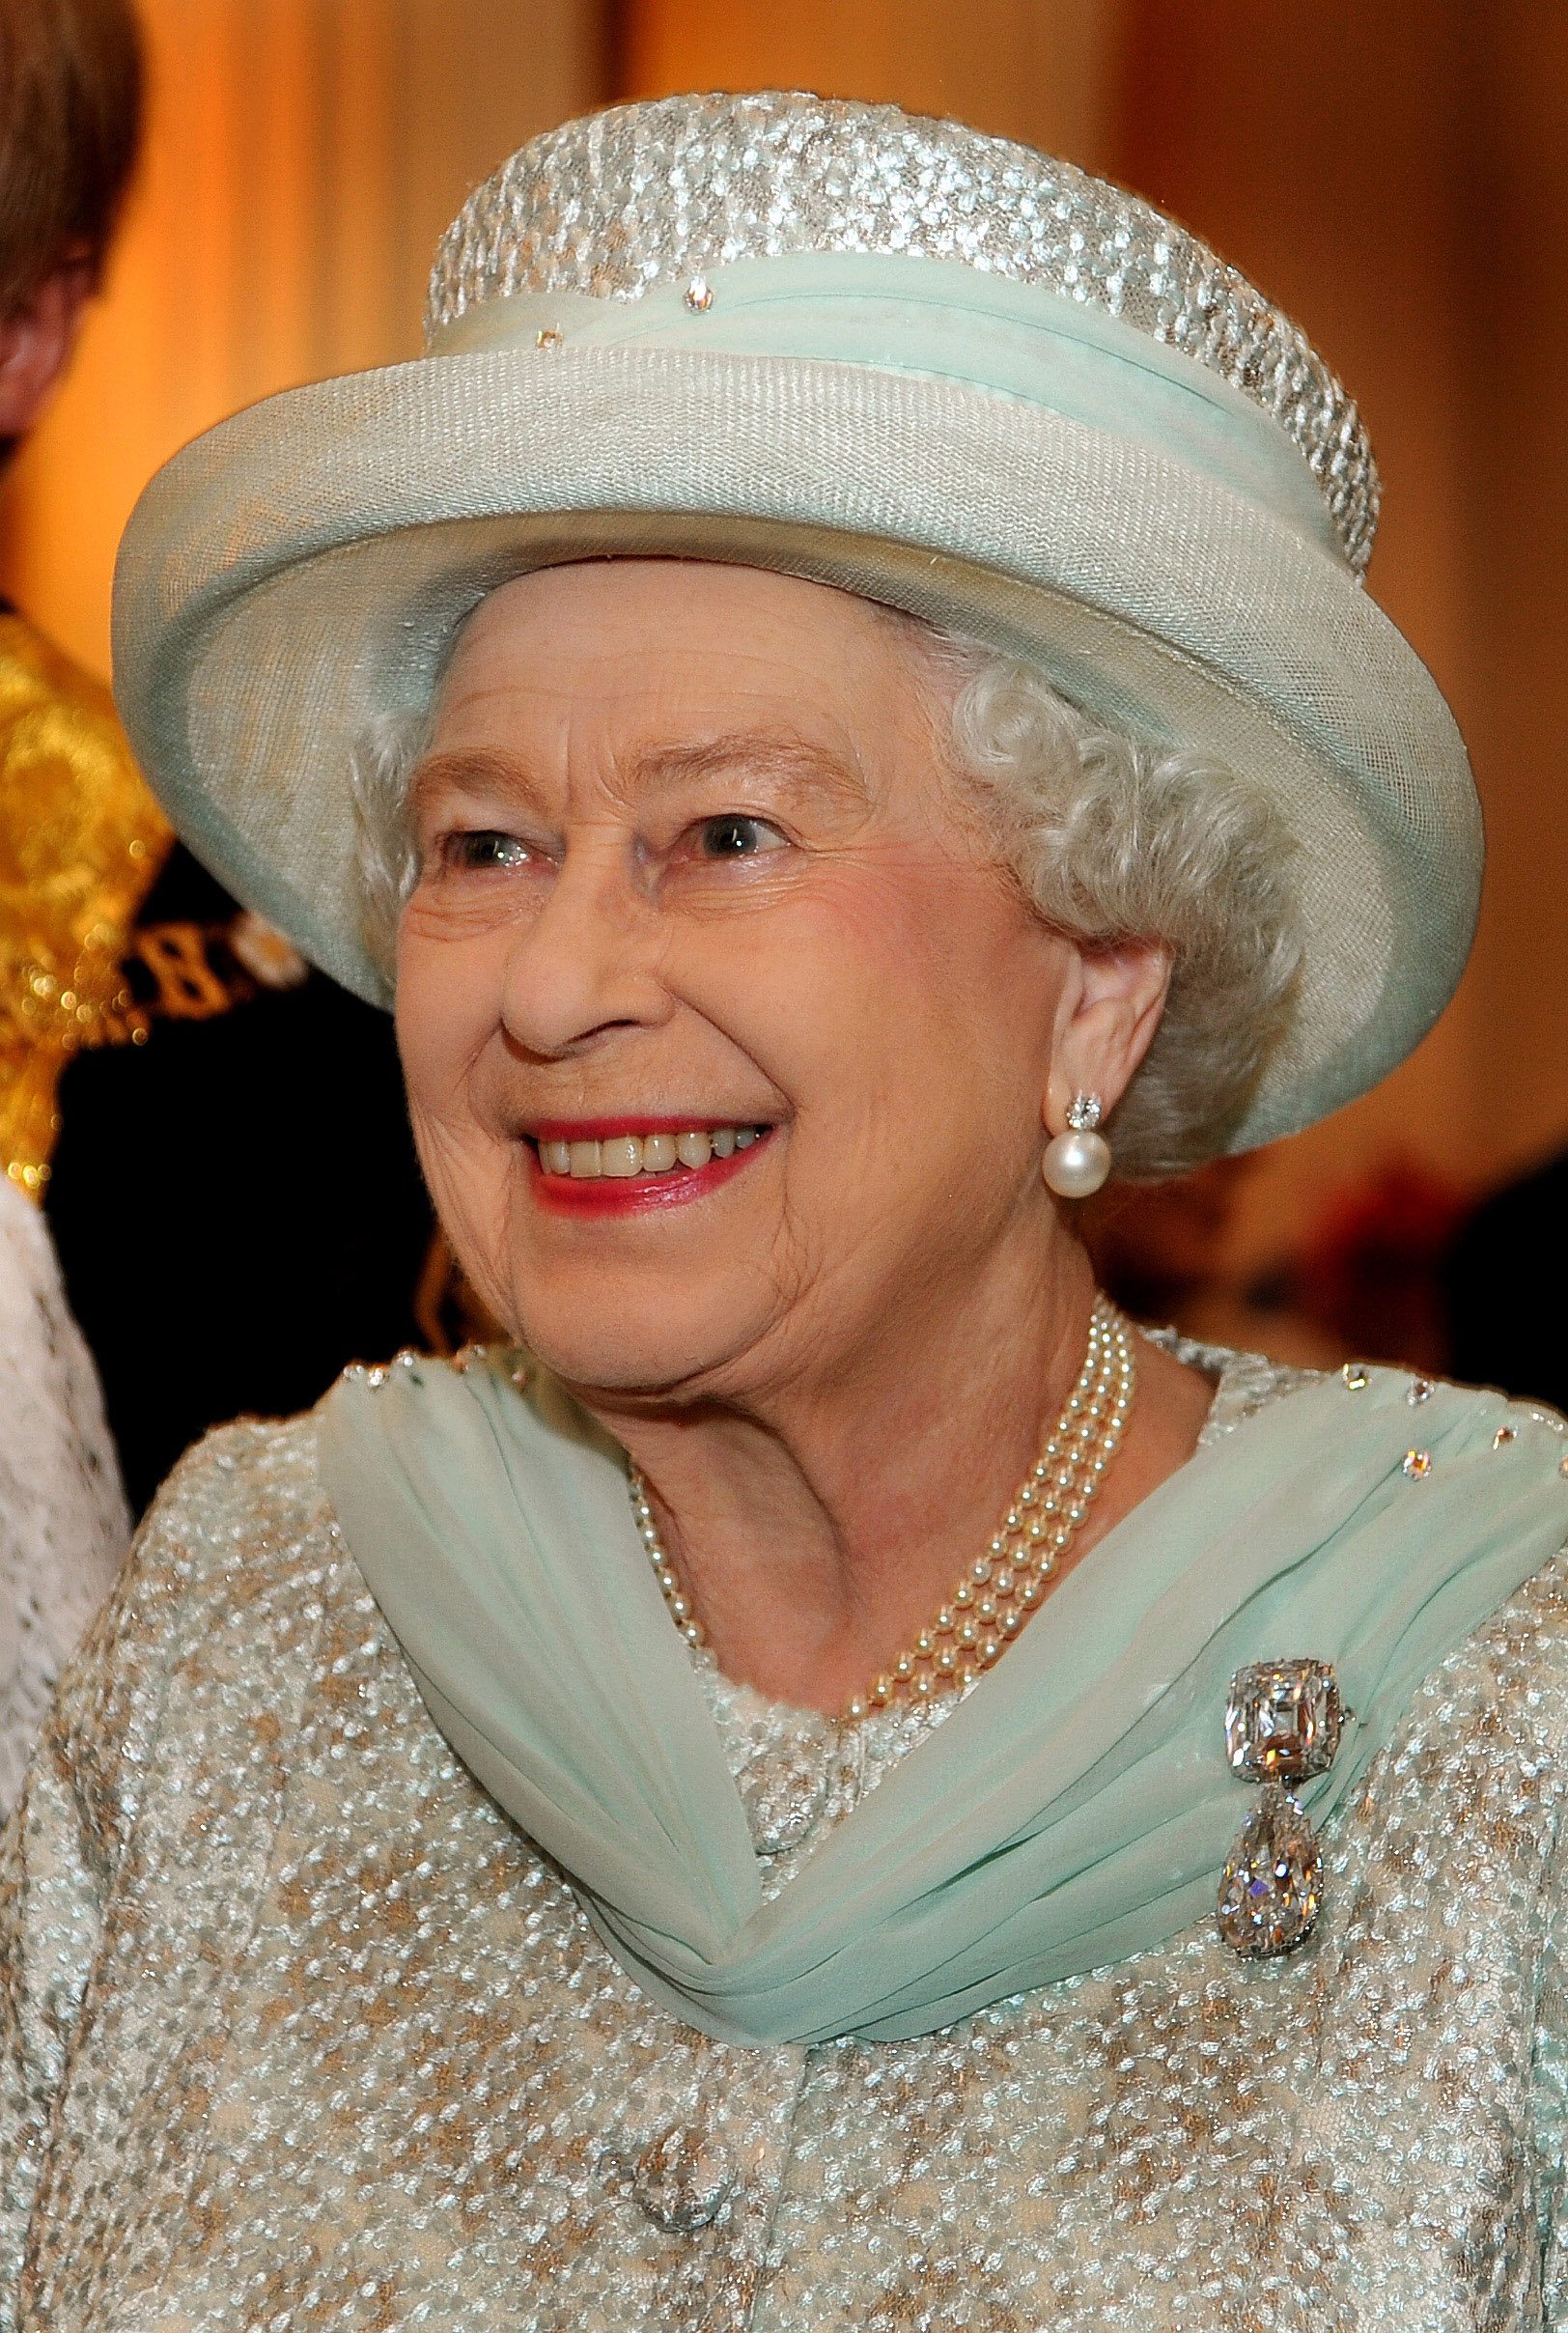 Kraliçe II. Elizabeth, 5 Haziran 2012'de Londra, İngiltere'de Kraliçe'nin Elmas Yıldönümü münasebetiyle Londra ve Şehir Lordu tarafından verilen resepsiyon için Mansion House'un Mısırlı odasında konuklarla konuşurken gülümsüyor.  |  Kaynak: Getty Images